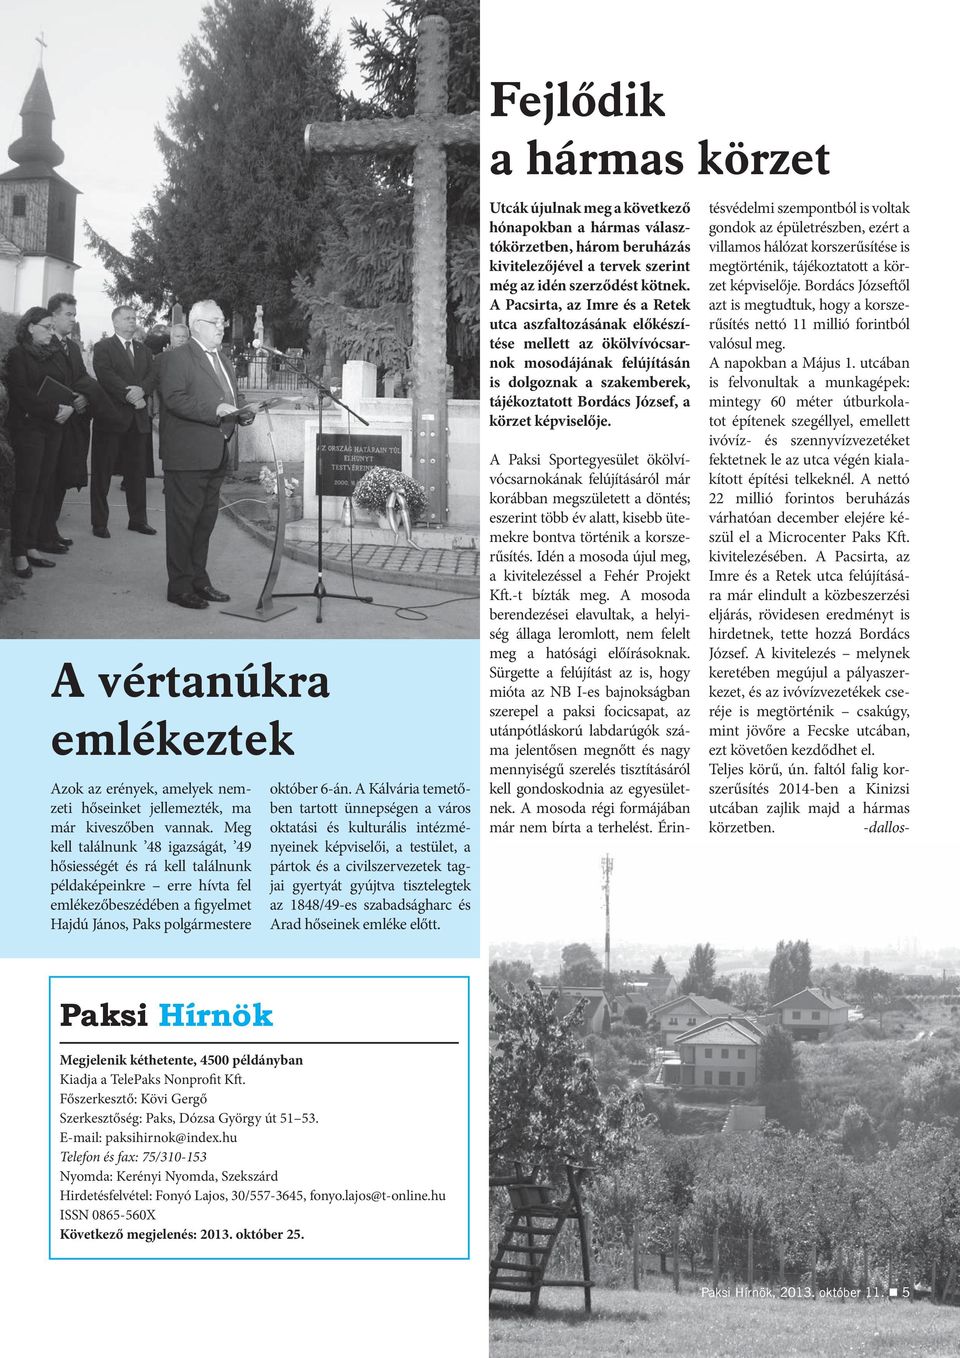 A Kálvária temetőben tartott ünnepségen a város oktatási és kulturális intézményeinek képviselői, a testület, a pártok és a civilszervezetek tagjai gyertyát gyújtva tisztelegtek az 1848/49-es